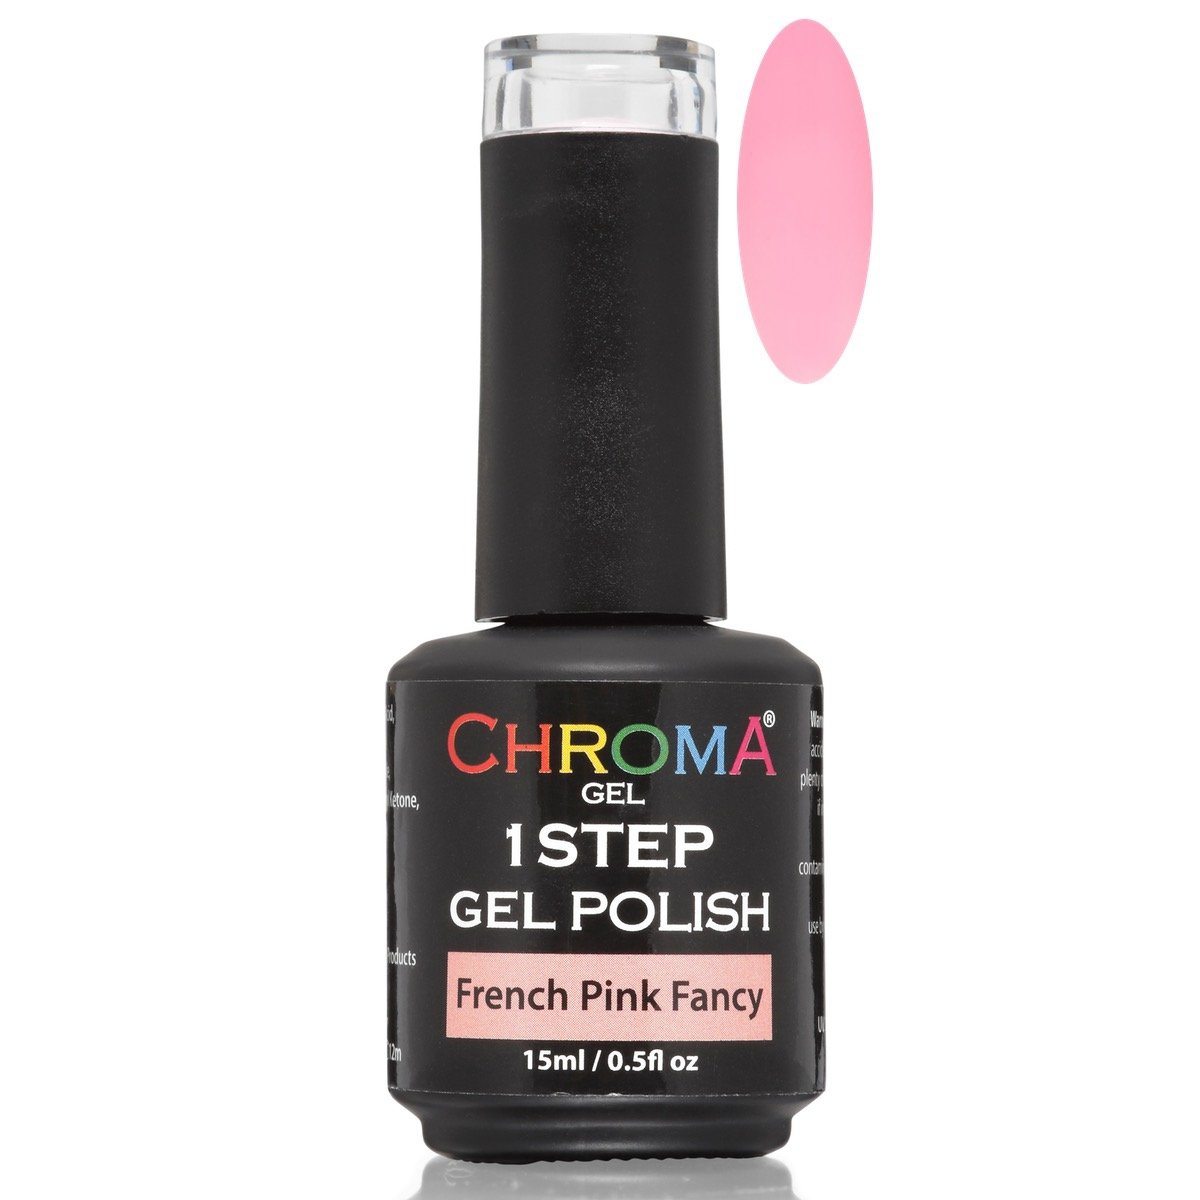 Chroma Gel 1 Step Gel Polish French Pink Fancy No.65 - Beauty Hair Products LtdChroma Gel